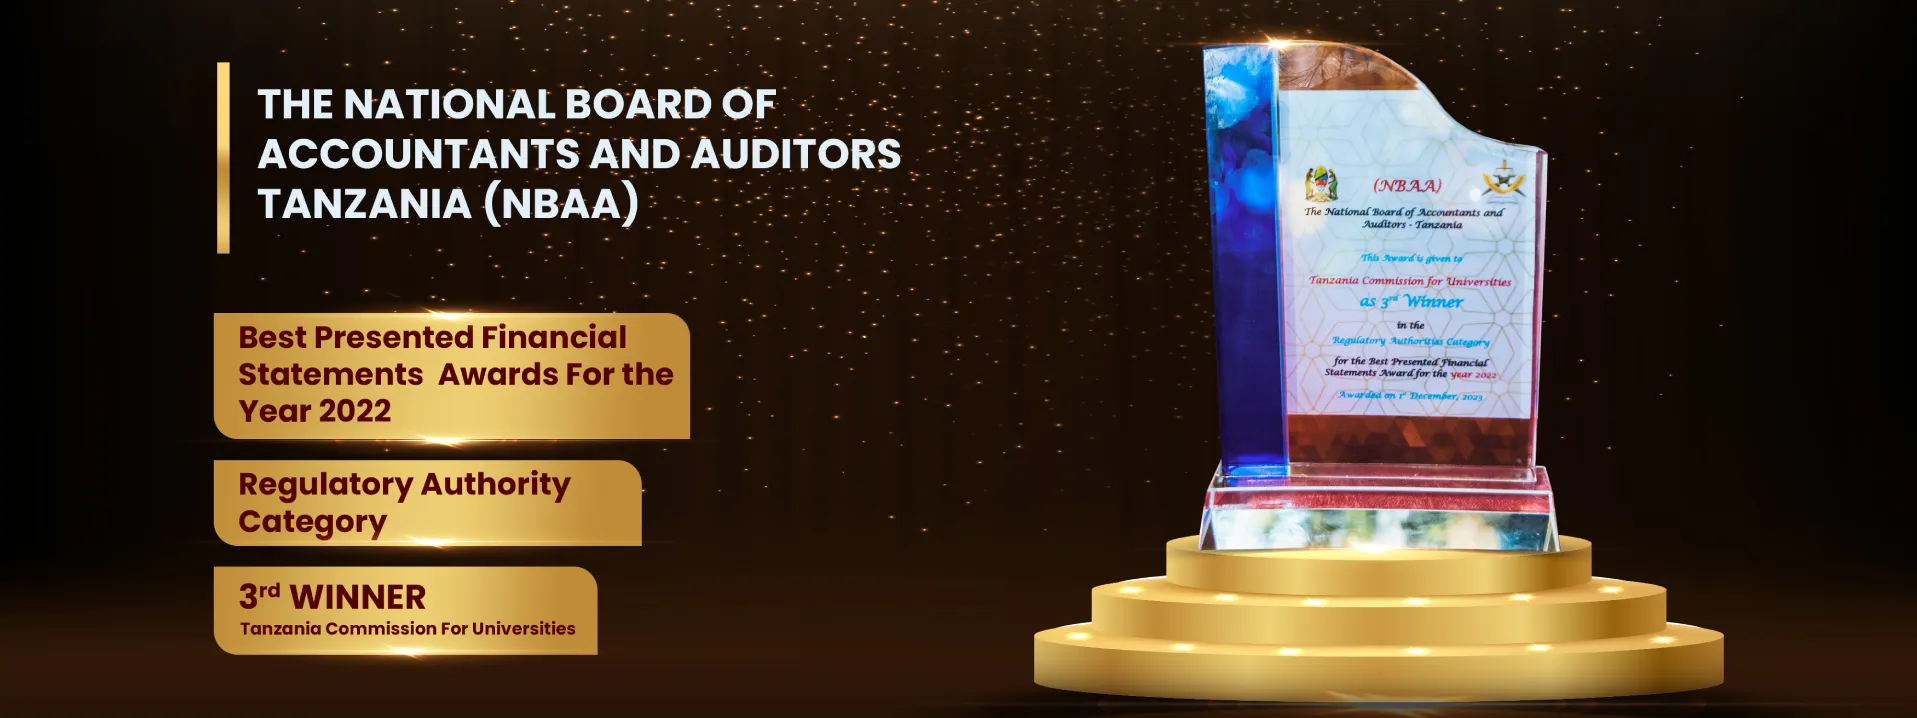 The National Board of Accountants and Auditors Tanzania (NBAA) Award